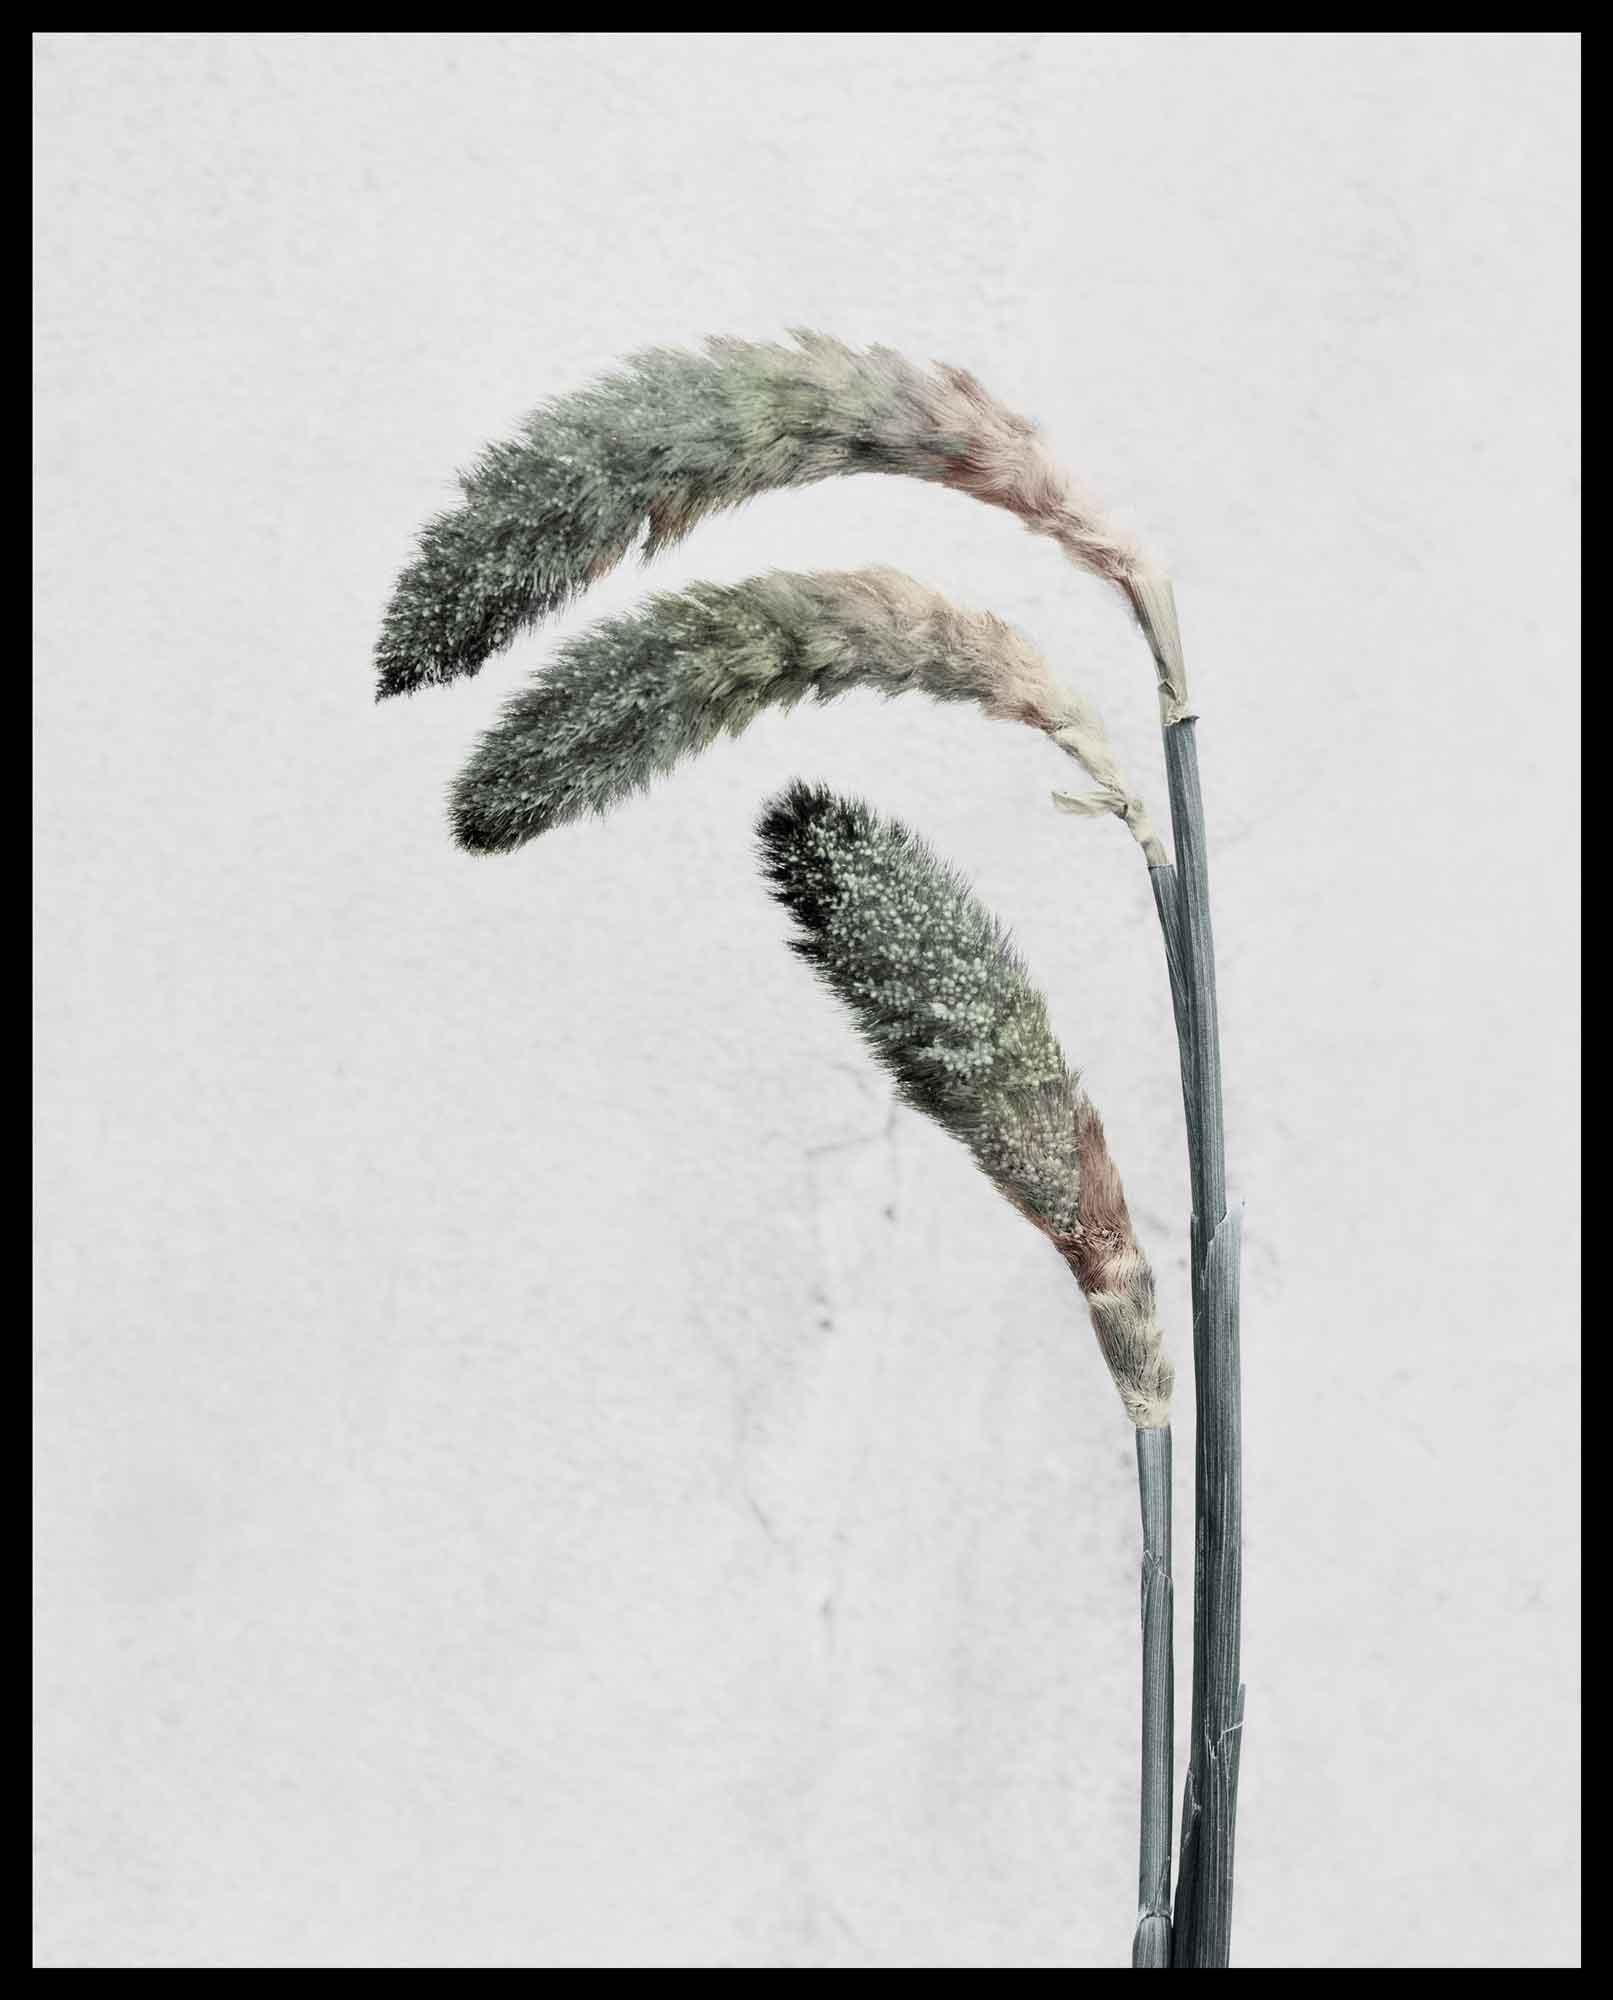 Botanica #22 (Pennisetum) (Zeitgenössisch), Photograph, von Vee Speers